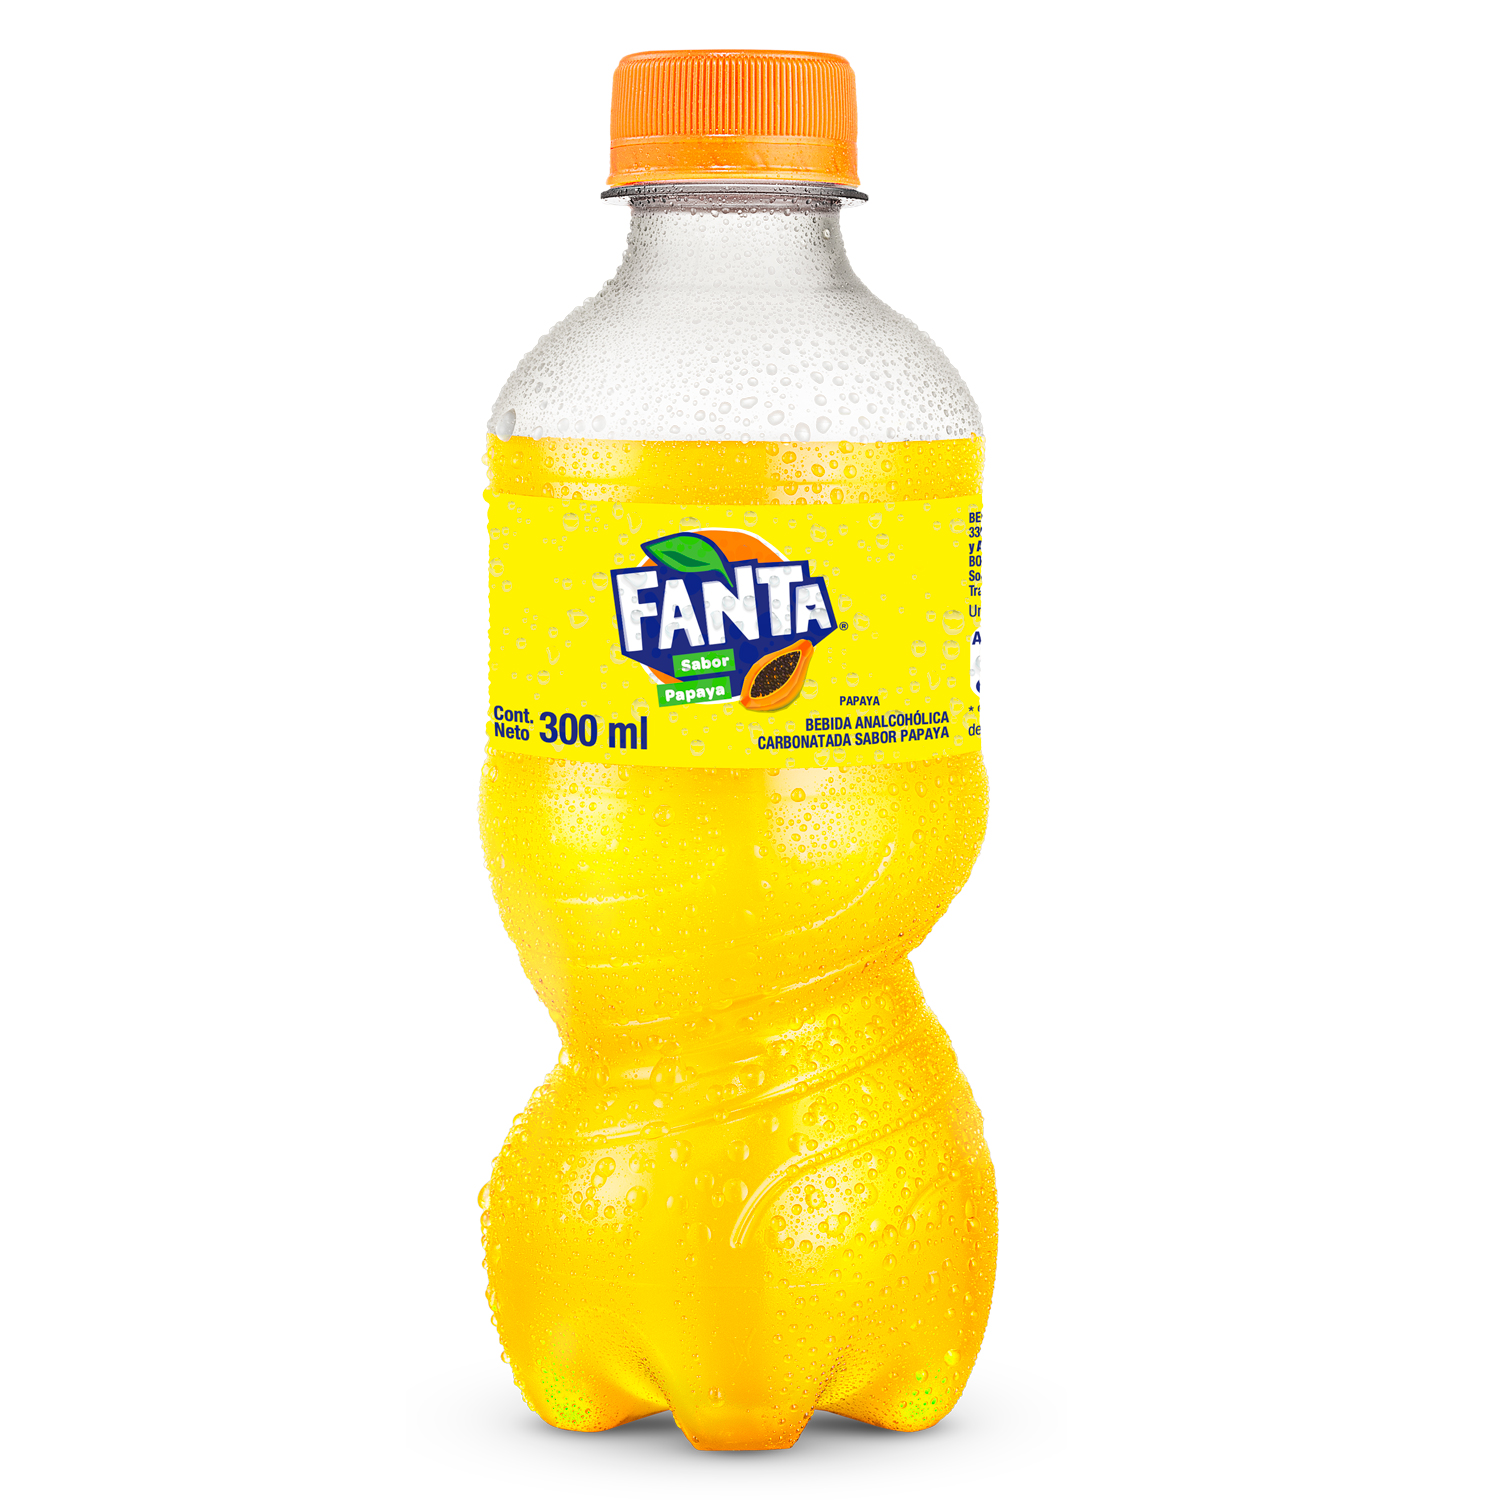 Botella de Fanta Papaya 300mL